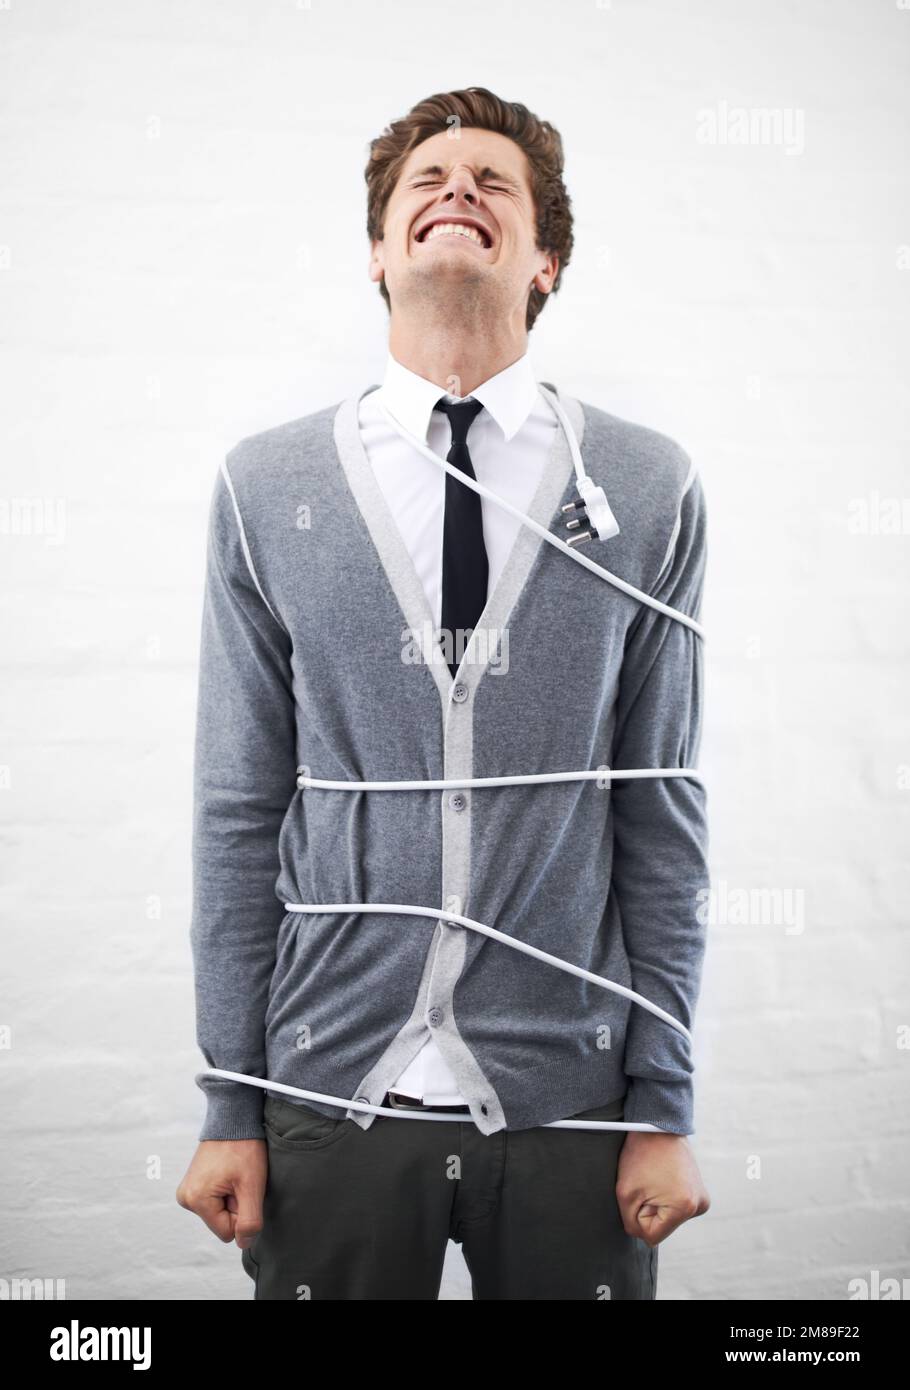 Retrato de un joven con el cuerpo atado con cuerdas: fotografía de stock ©  YouraPechkin@gmail.com #327423578